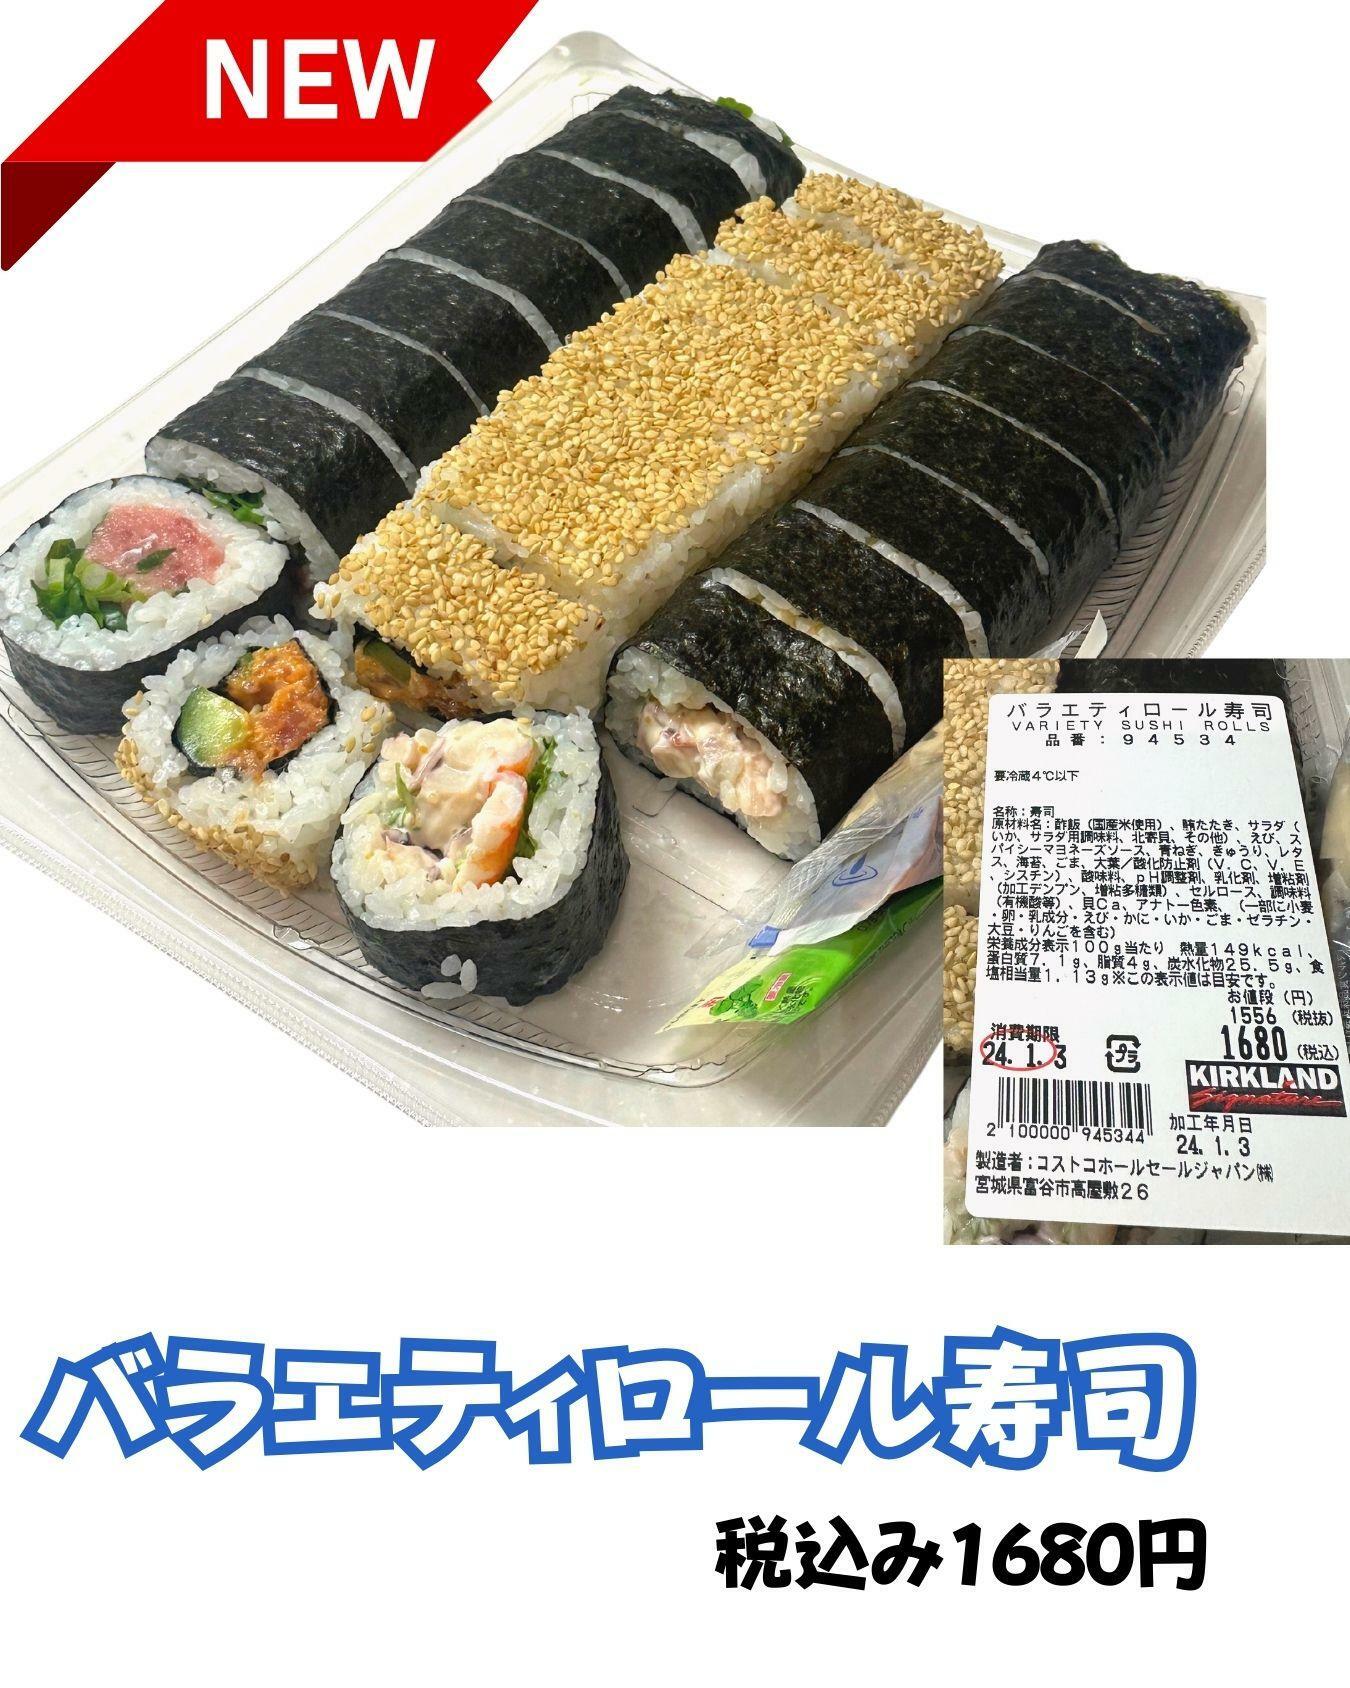 【コストコ】新商品バラエティロール寿司